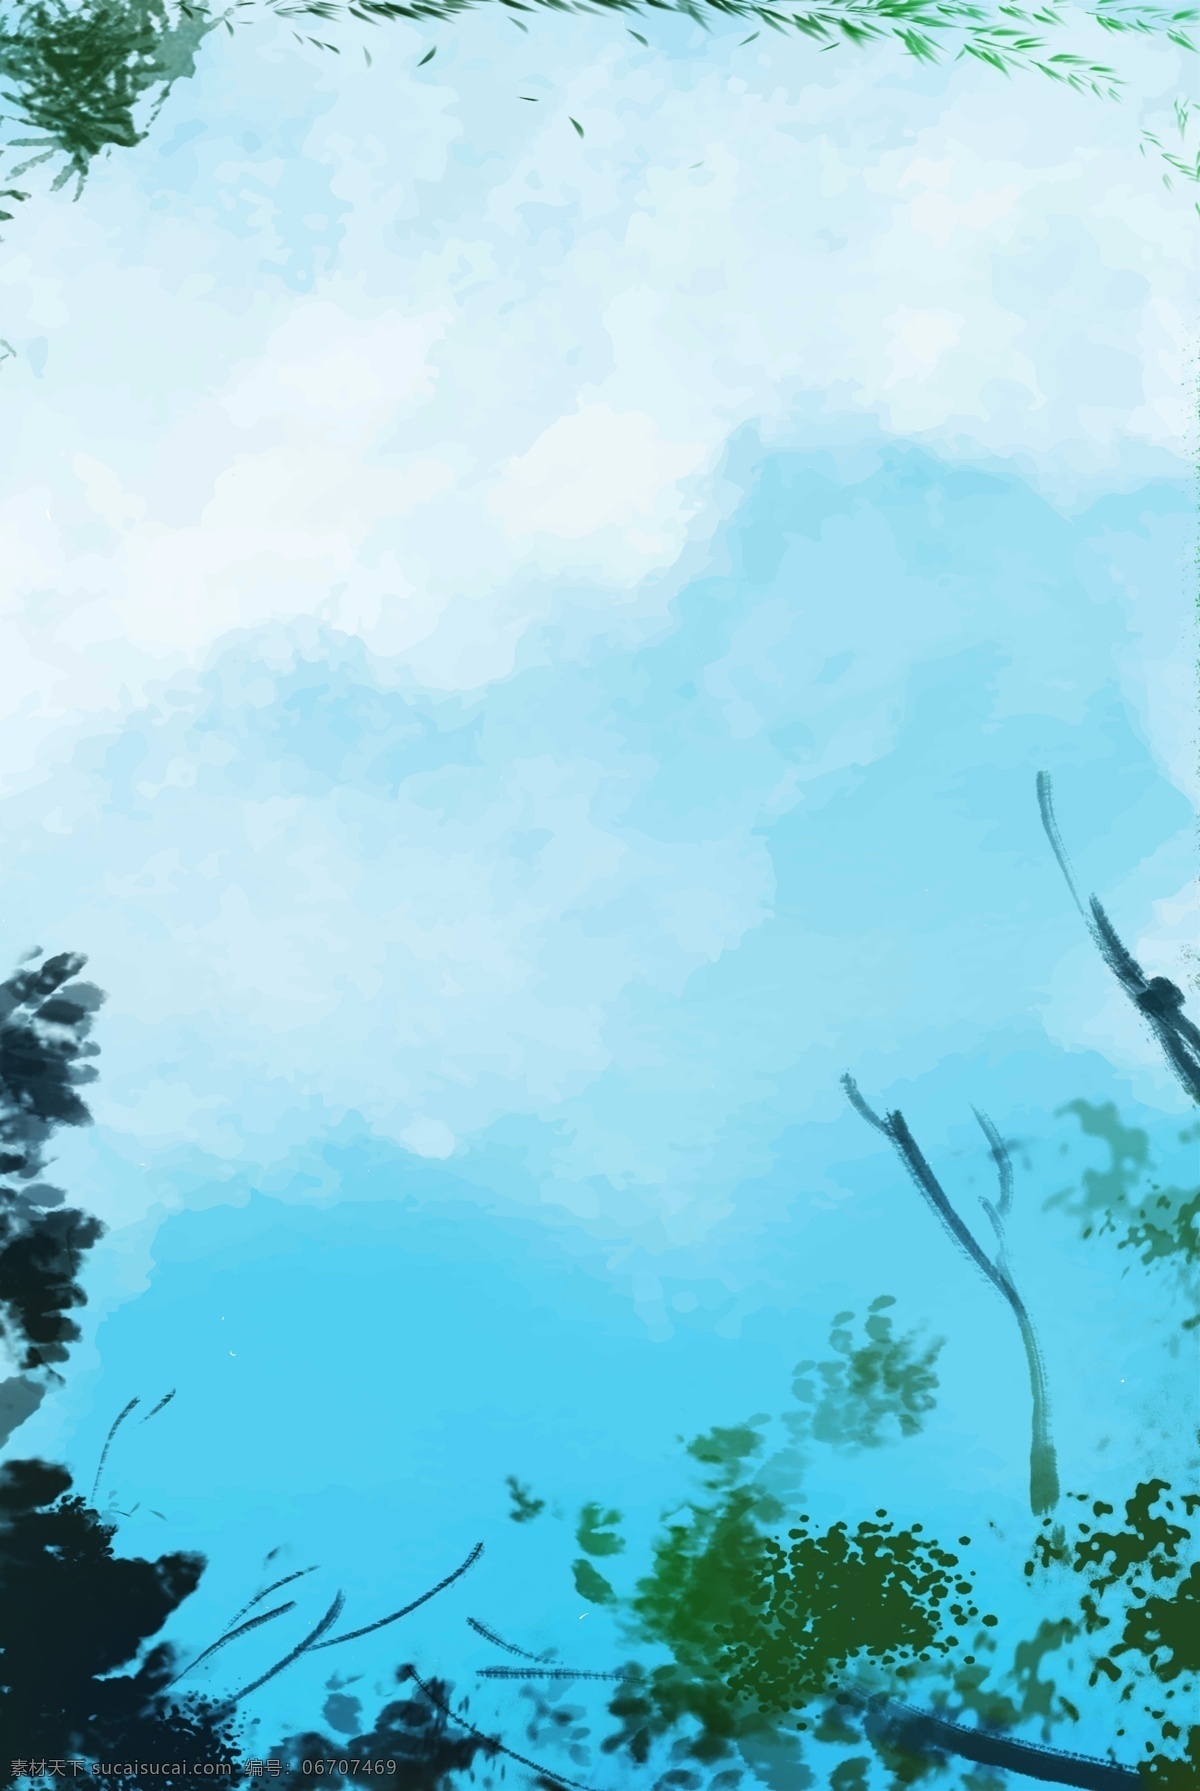 蓝色天空 风景 背景 电商 淘宝 春天 手绘 插画 自然风景 蓝色 天空 树木 渐变 清新 春季上新 淘宝背景